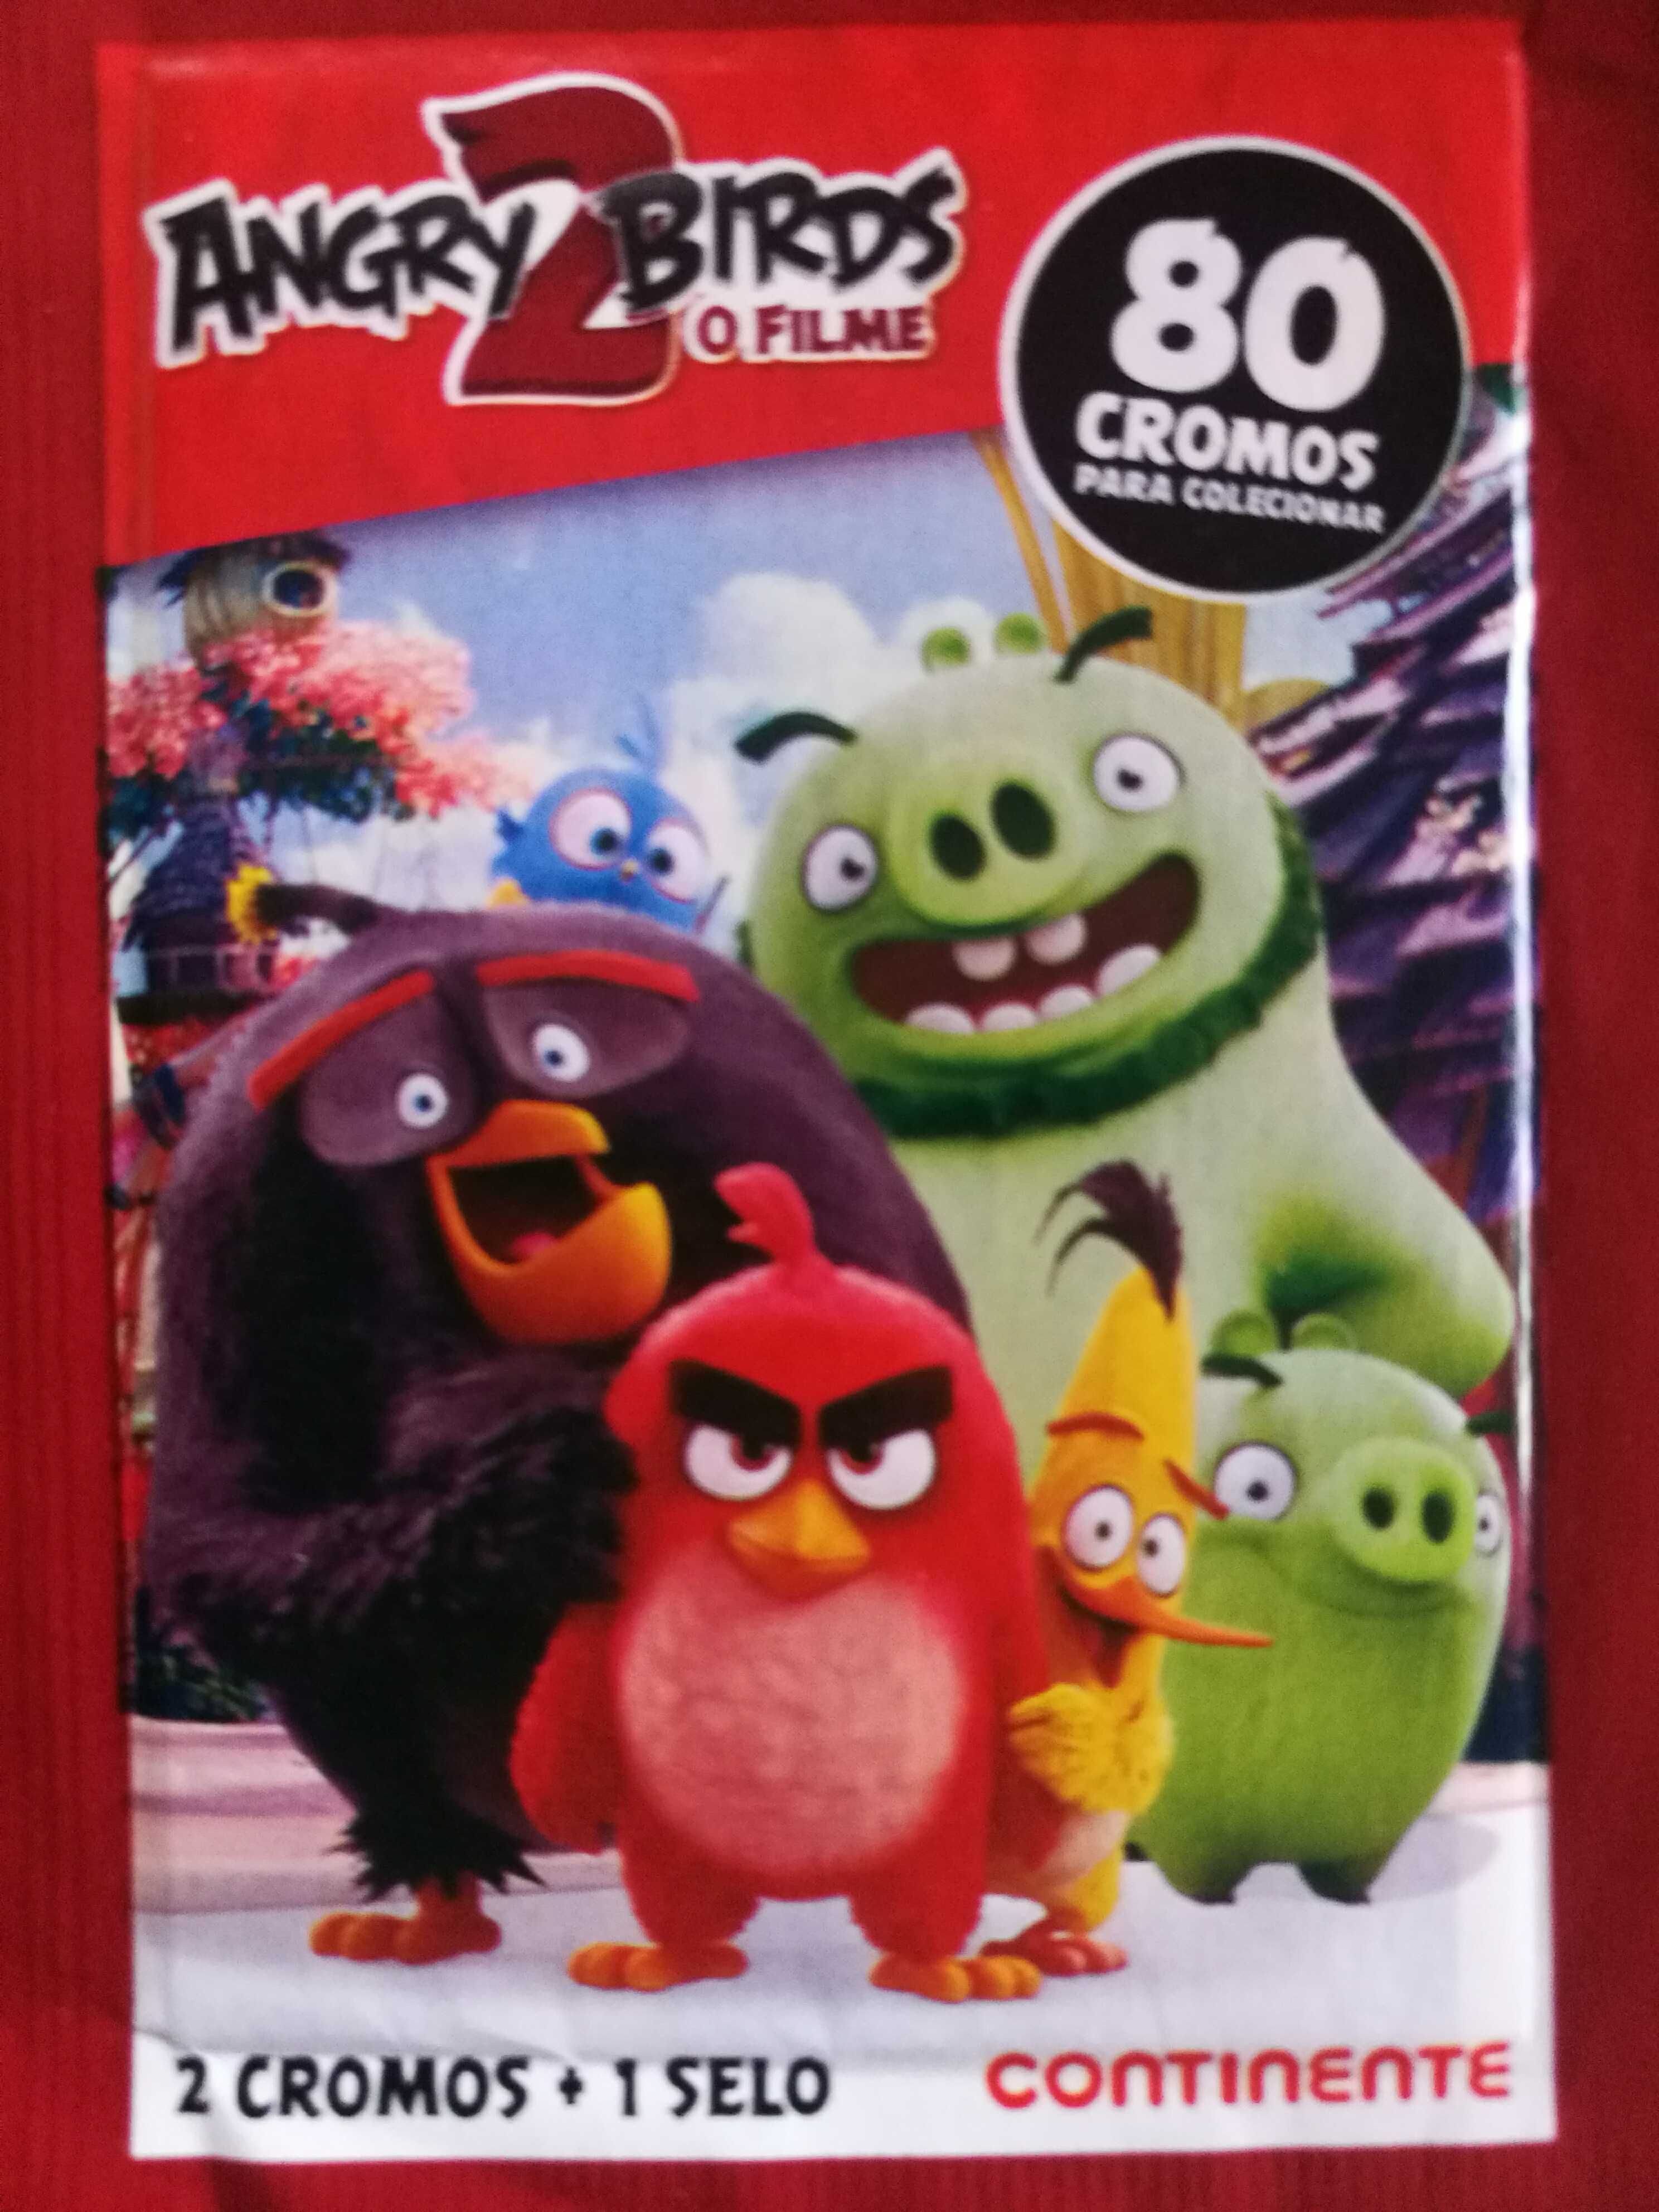 Saquetas de cromos Angry Birds 2